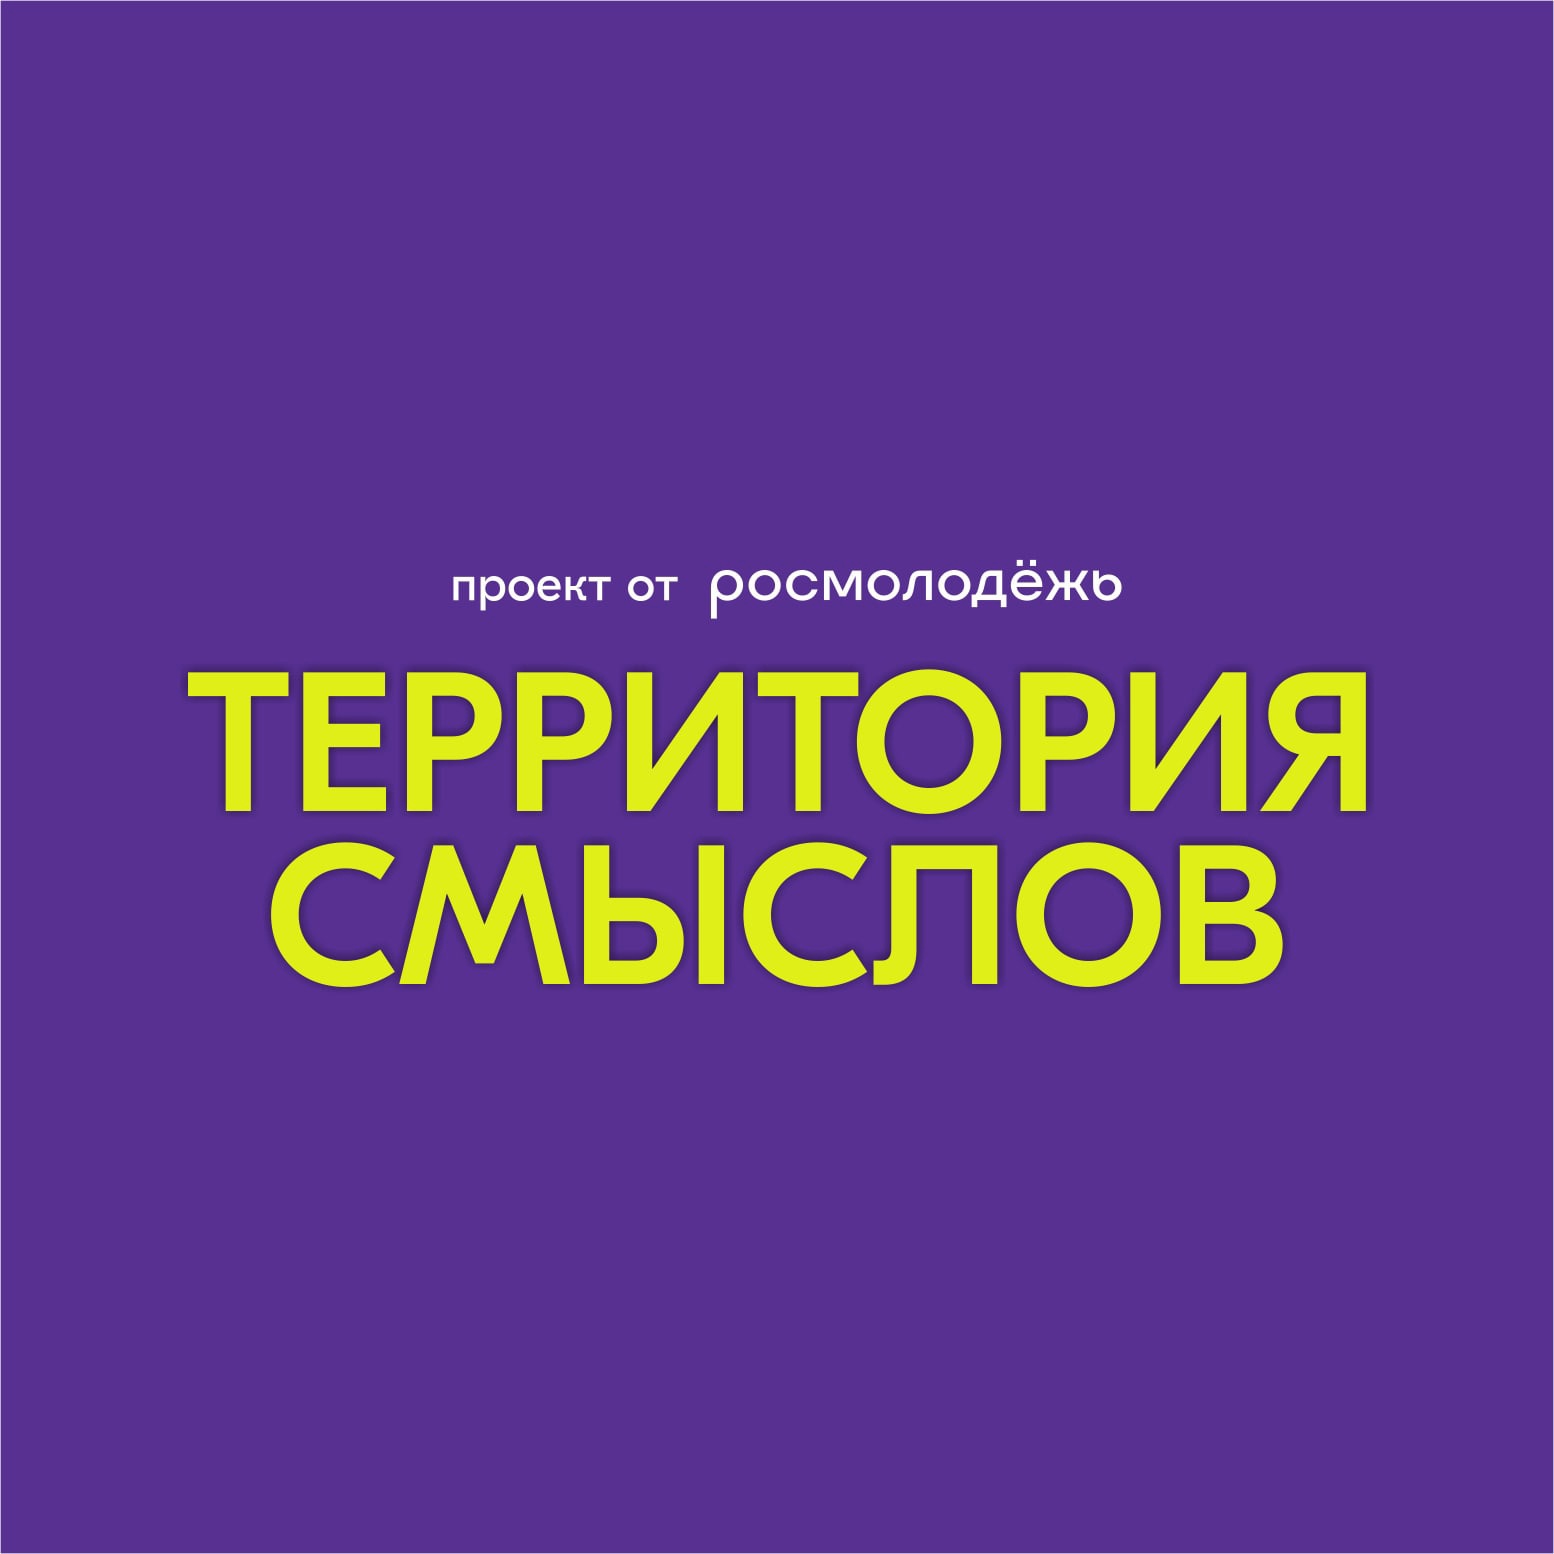 Молодёжь Белгородского района приглашается на Всероссийский форум «Территория смыслов».